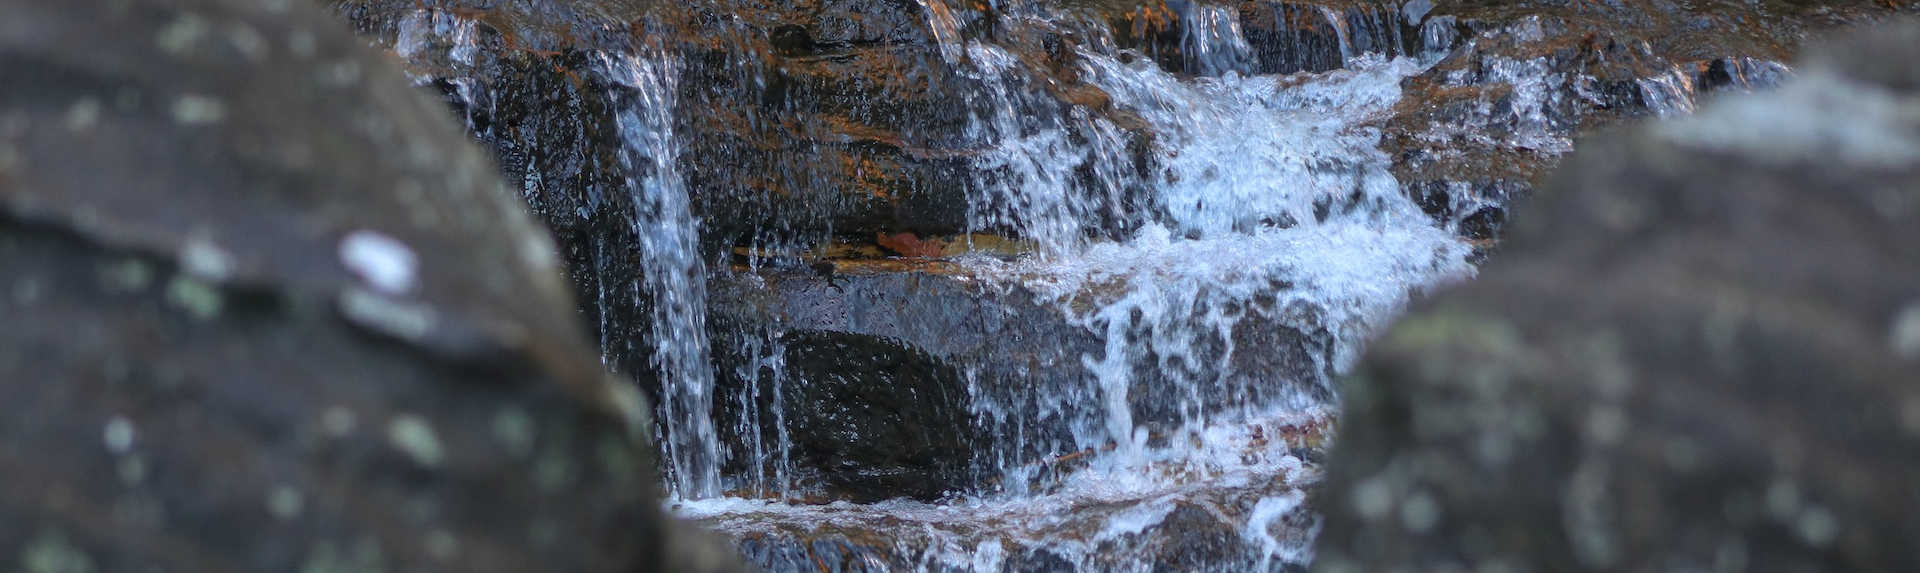 Wentworth Falls